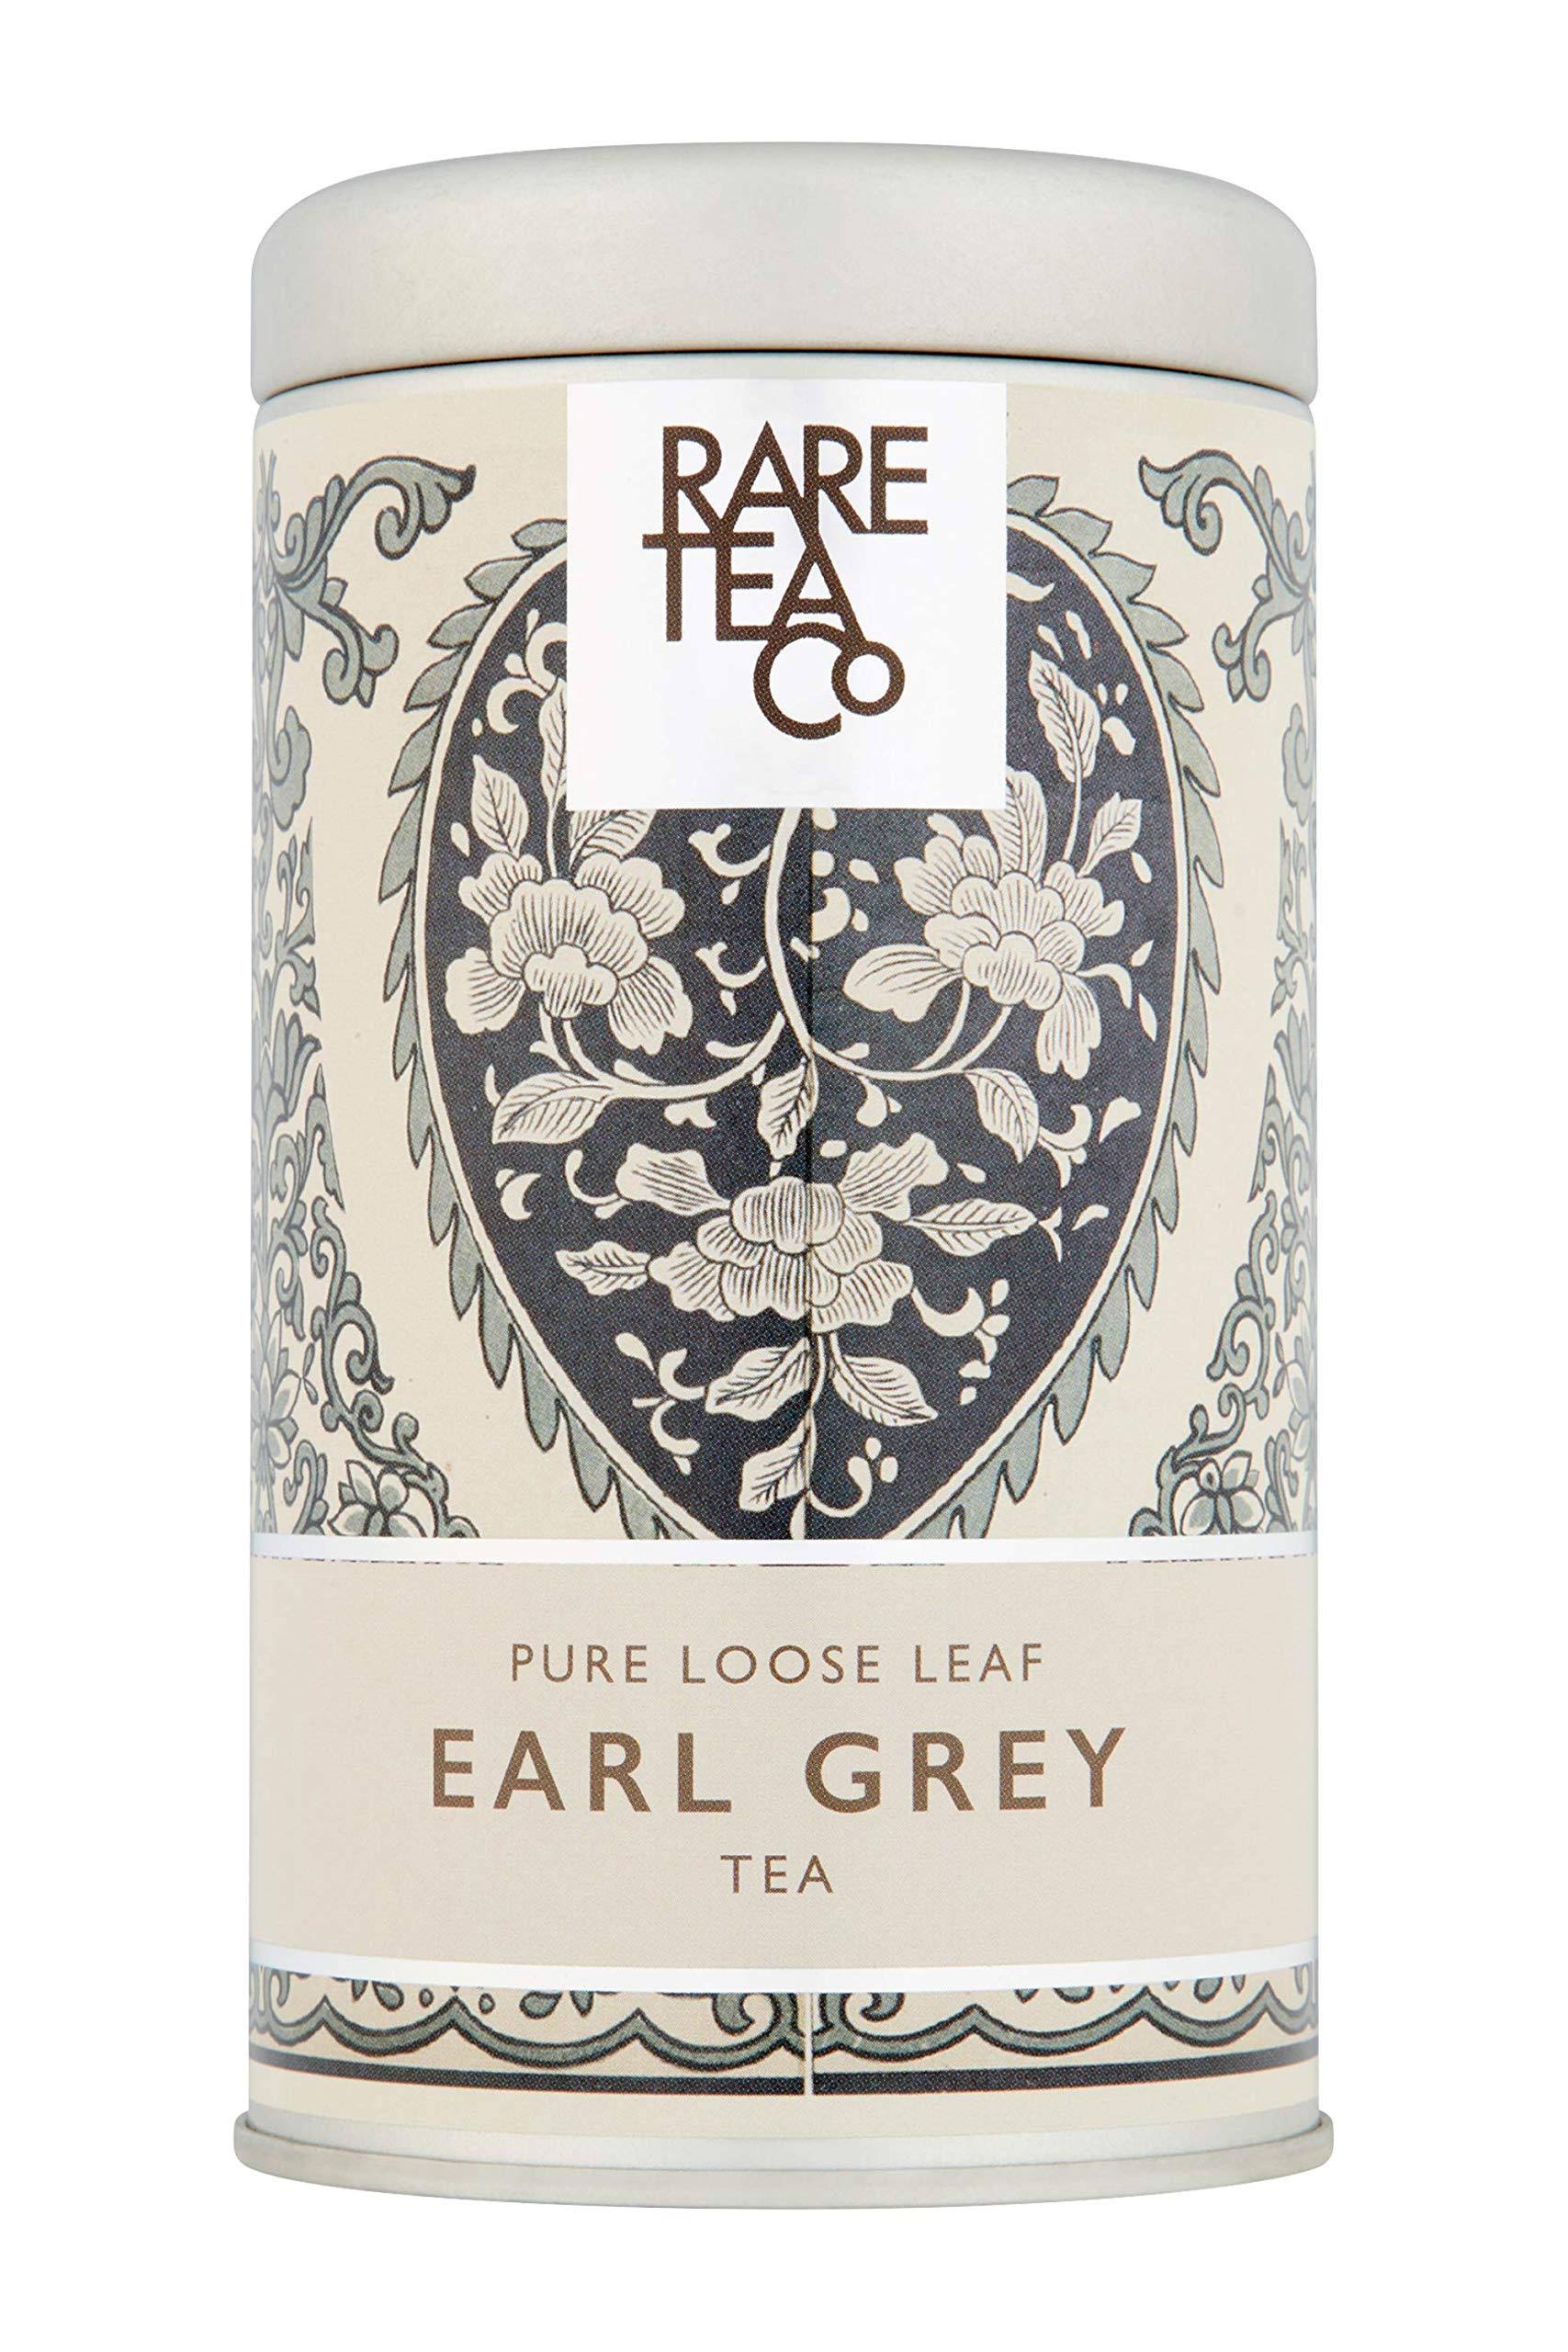 Rare Earl Grey Loose Leaf Tea | Rare Tea Company, 50g Tin